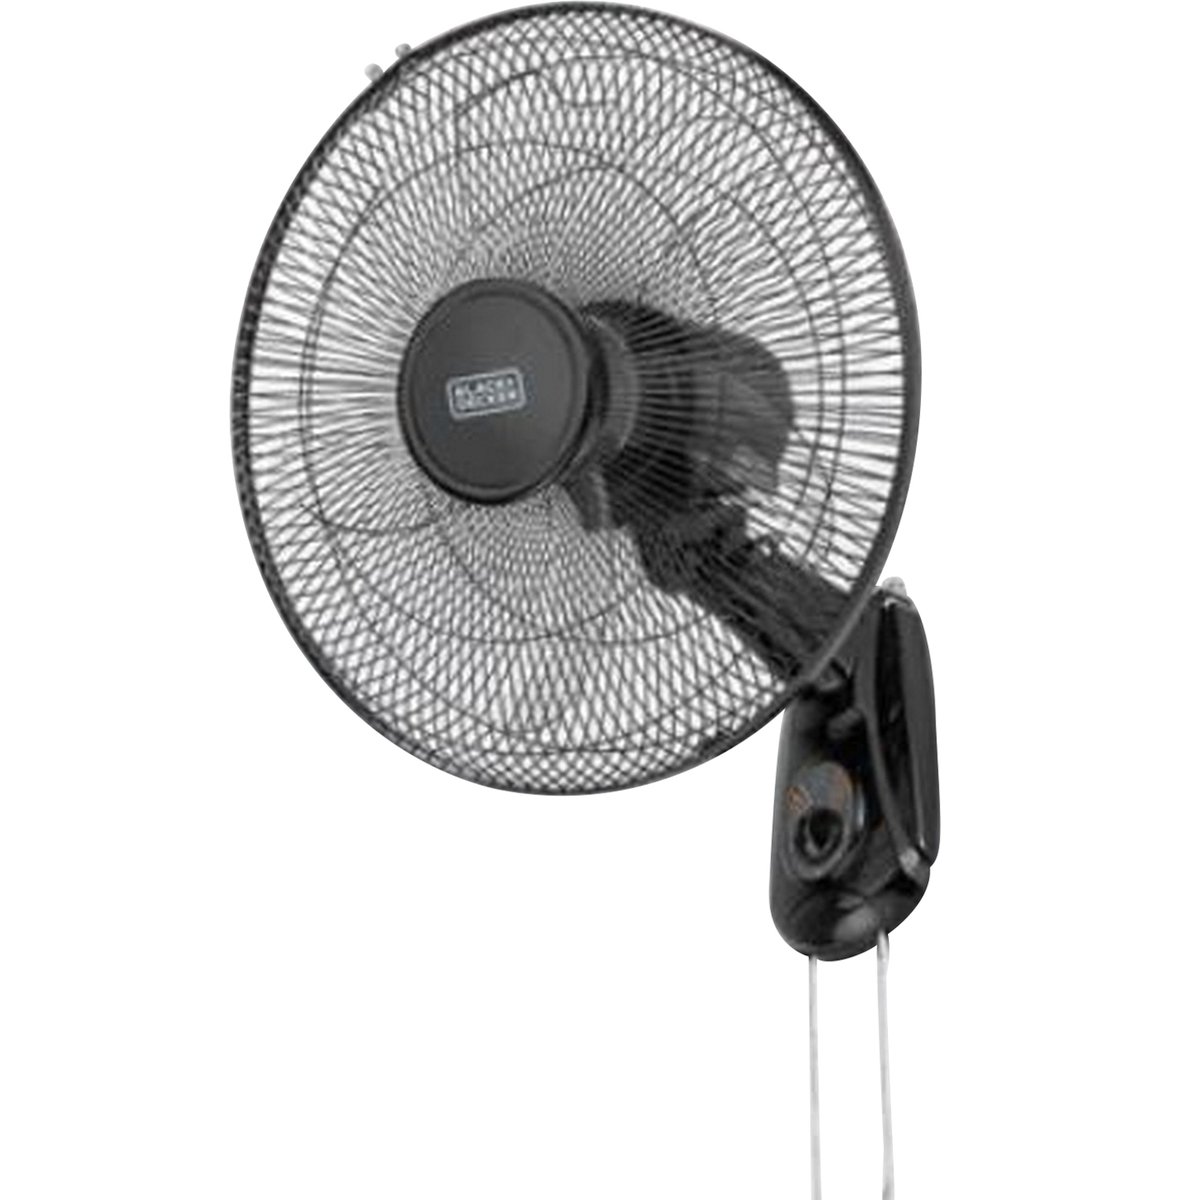 Black+Decker 2000W Vertical Fan Heater, White, 1.44 Kg, Hx310